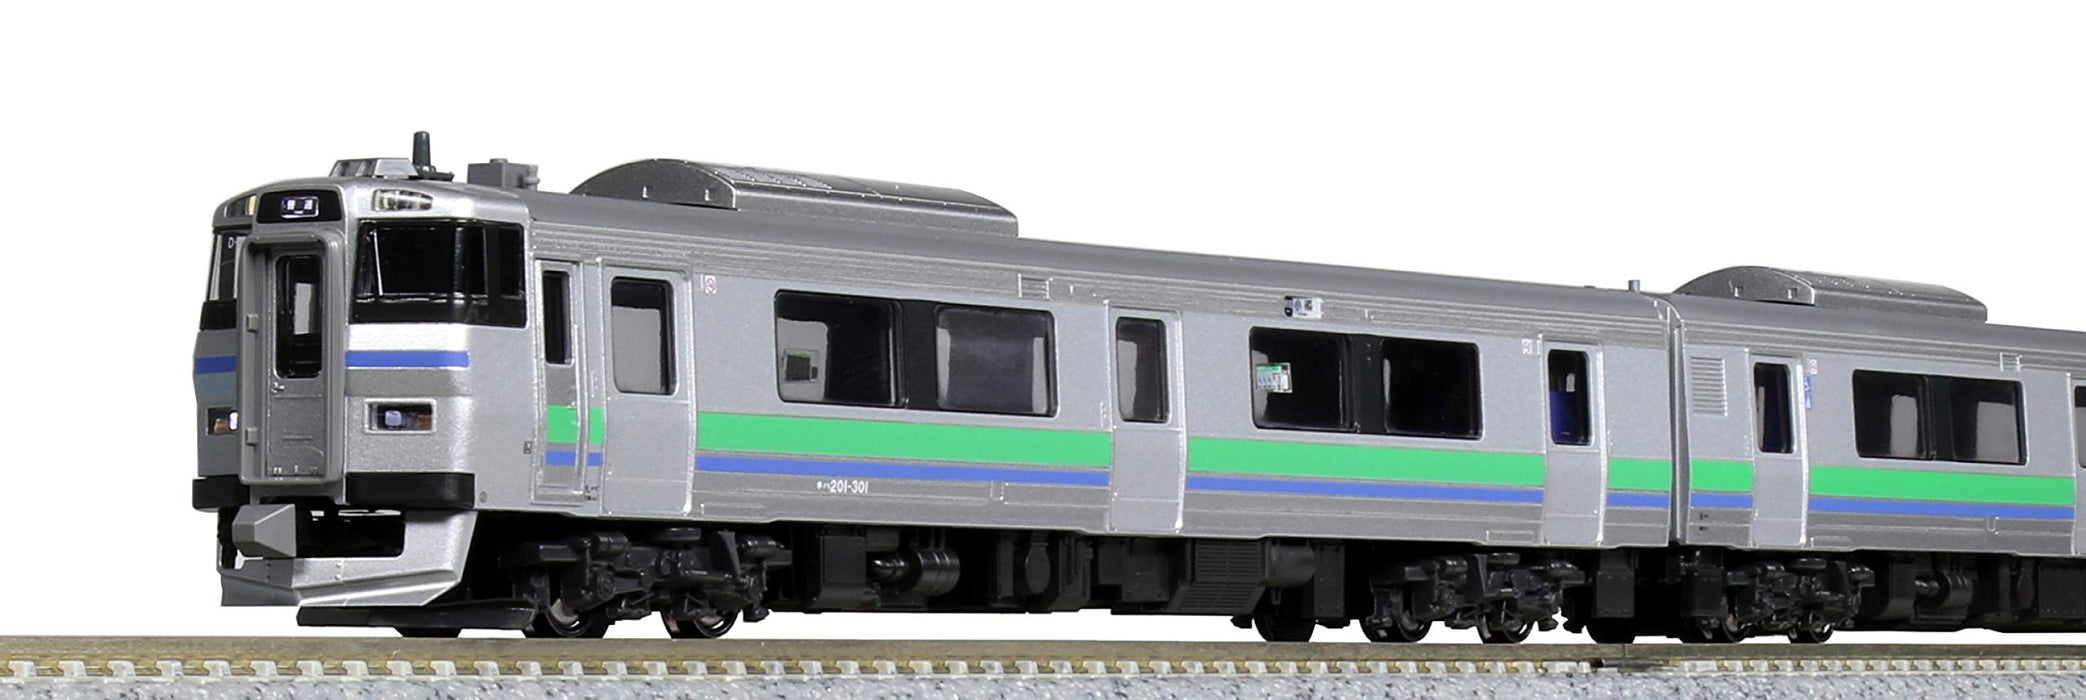 Kato Kiha 201 Series Niseko Liner 3-Car Set: N Gauge 10-1620 Railway Diesel Model